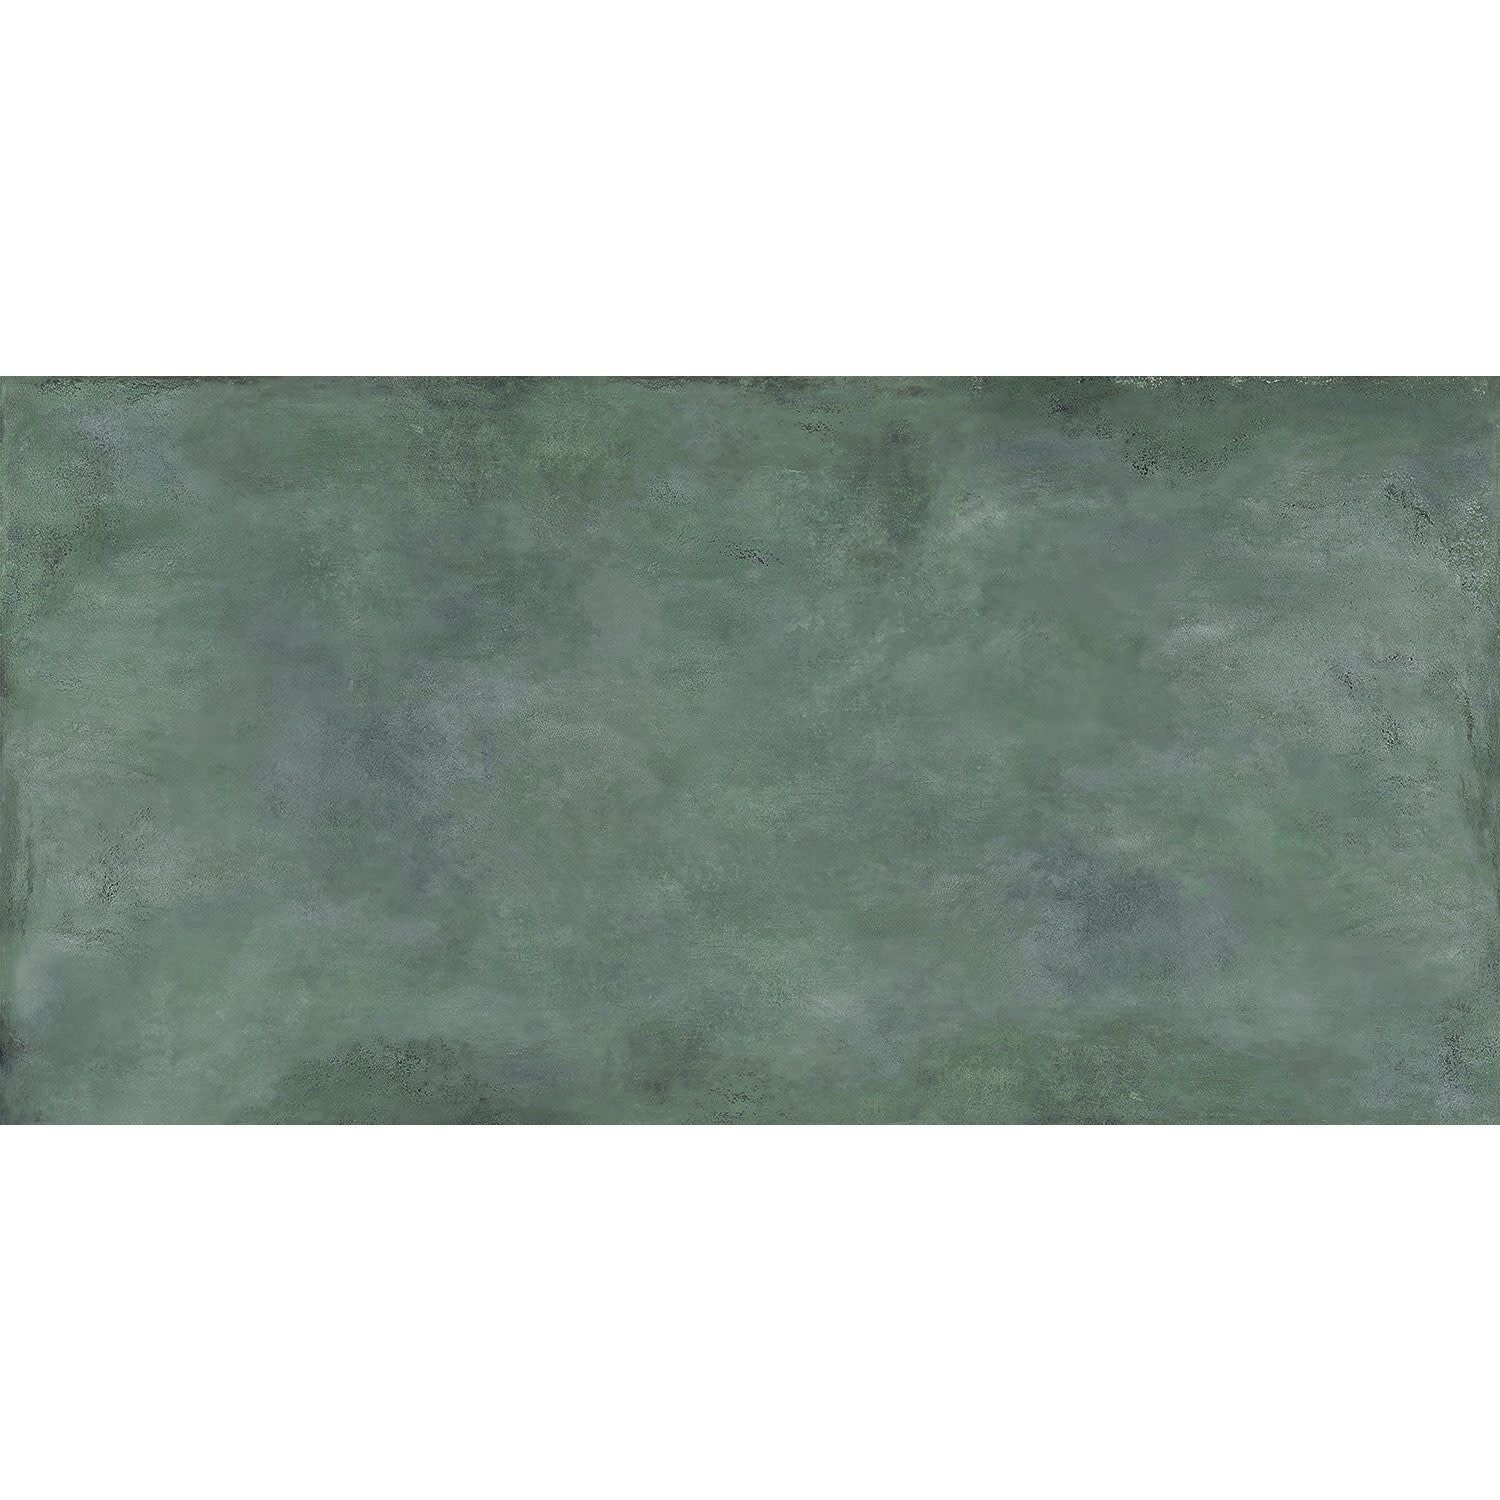 Patina Plate Groen MAT 2398 x 1198 Tegel